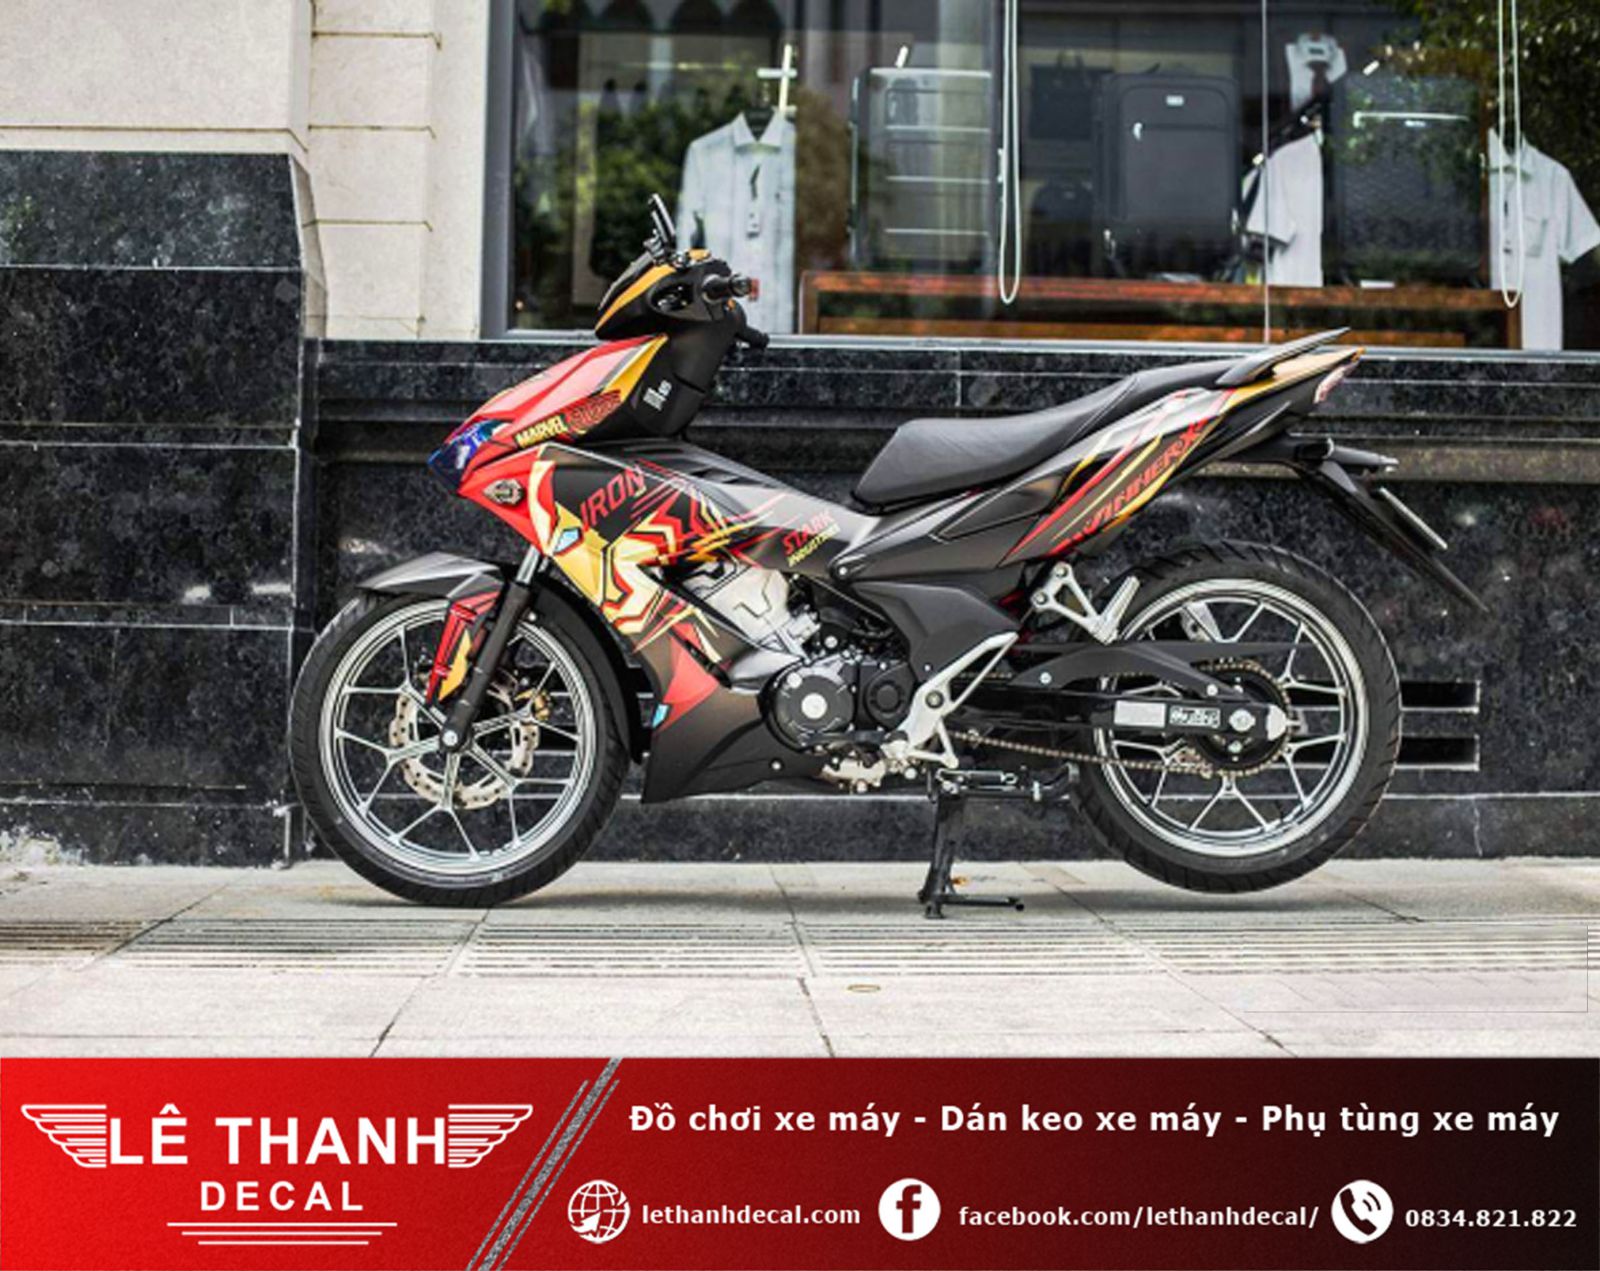 [TOP] 10+ tiệm dán decal xe máy tại quận Bình Tân uy tín, chất lượng 2023 